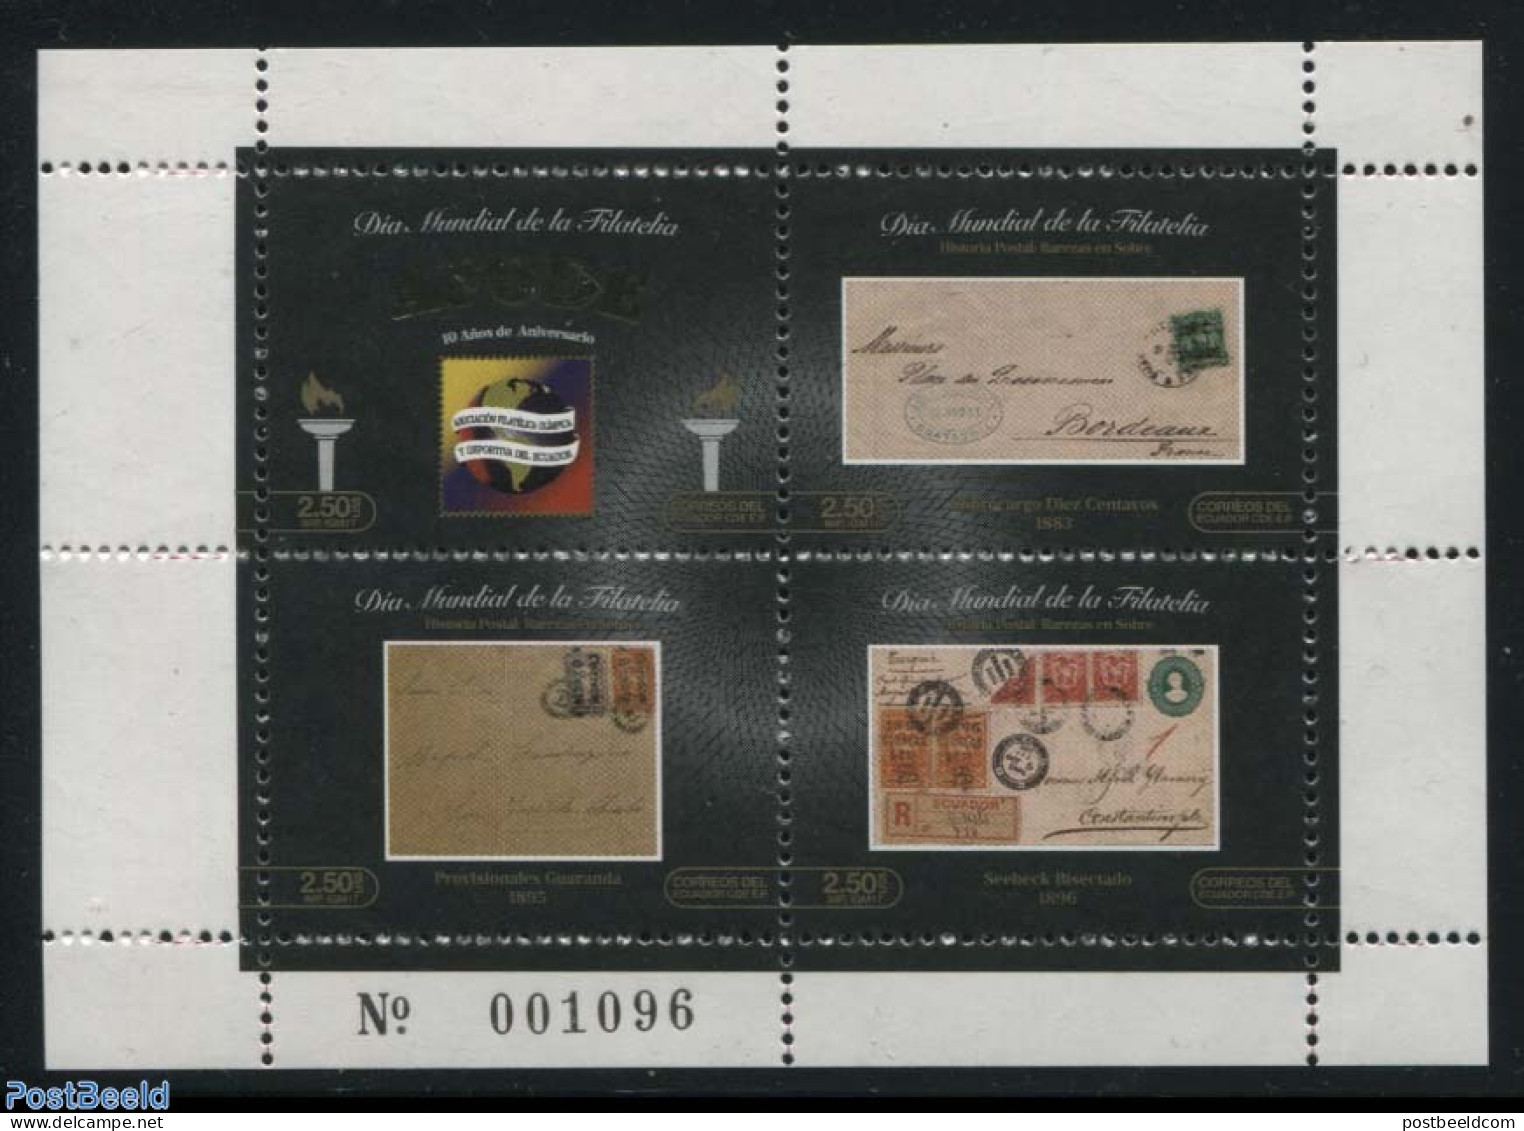 Ecuador 2017 AFODE, Philately 4v M/s, Mint NH, Philately - Stamps On Stamps - Francobolli Su Francobolli